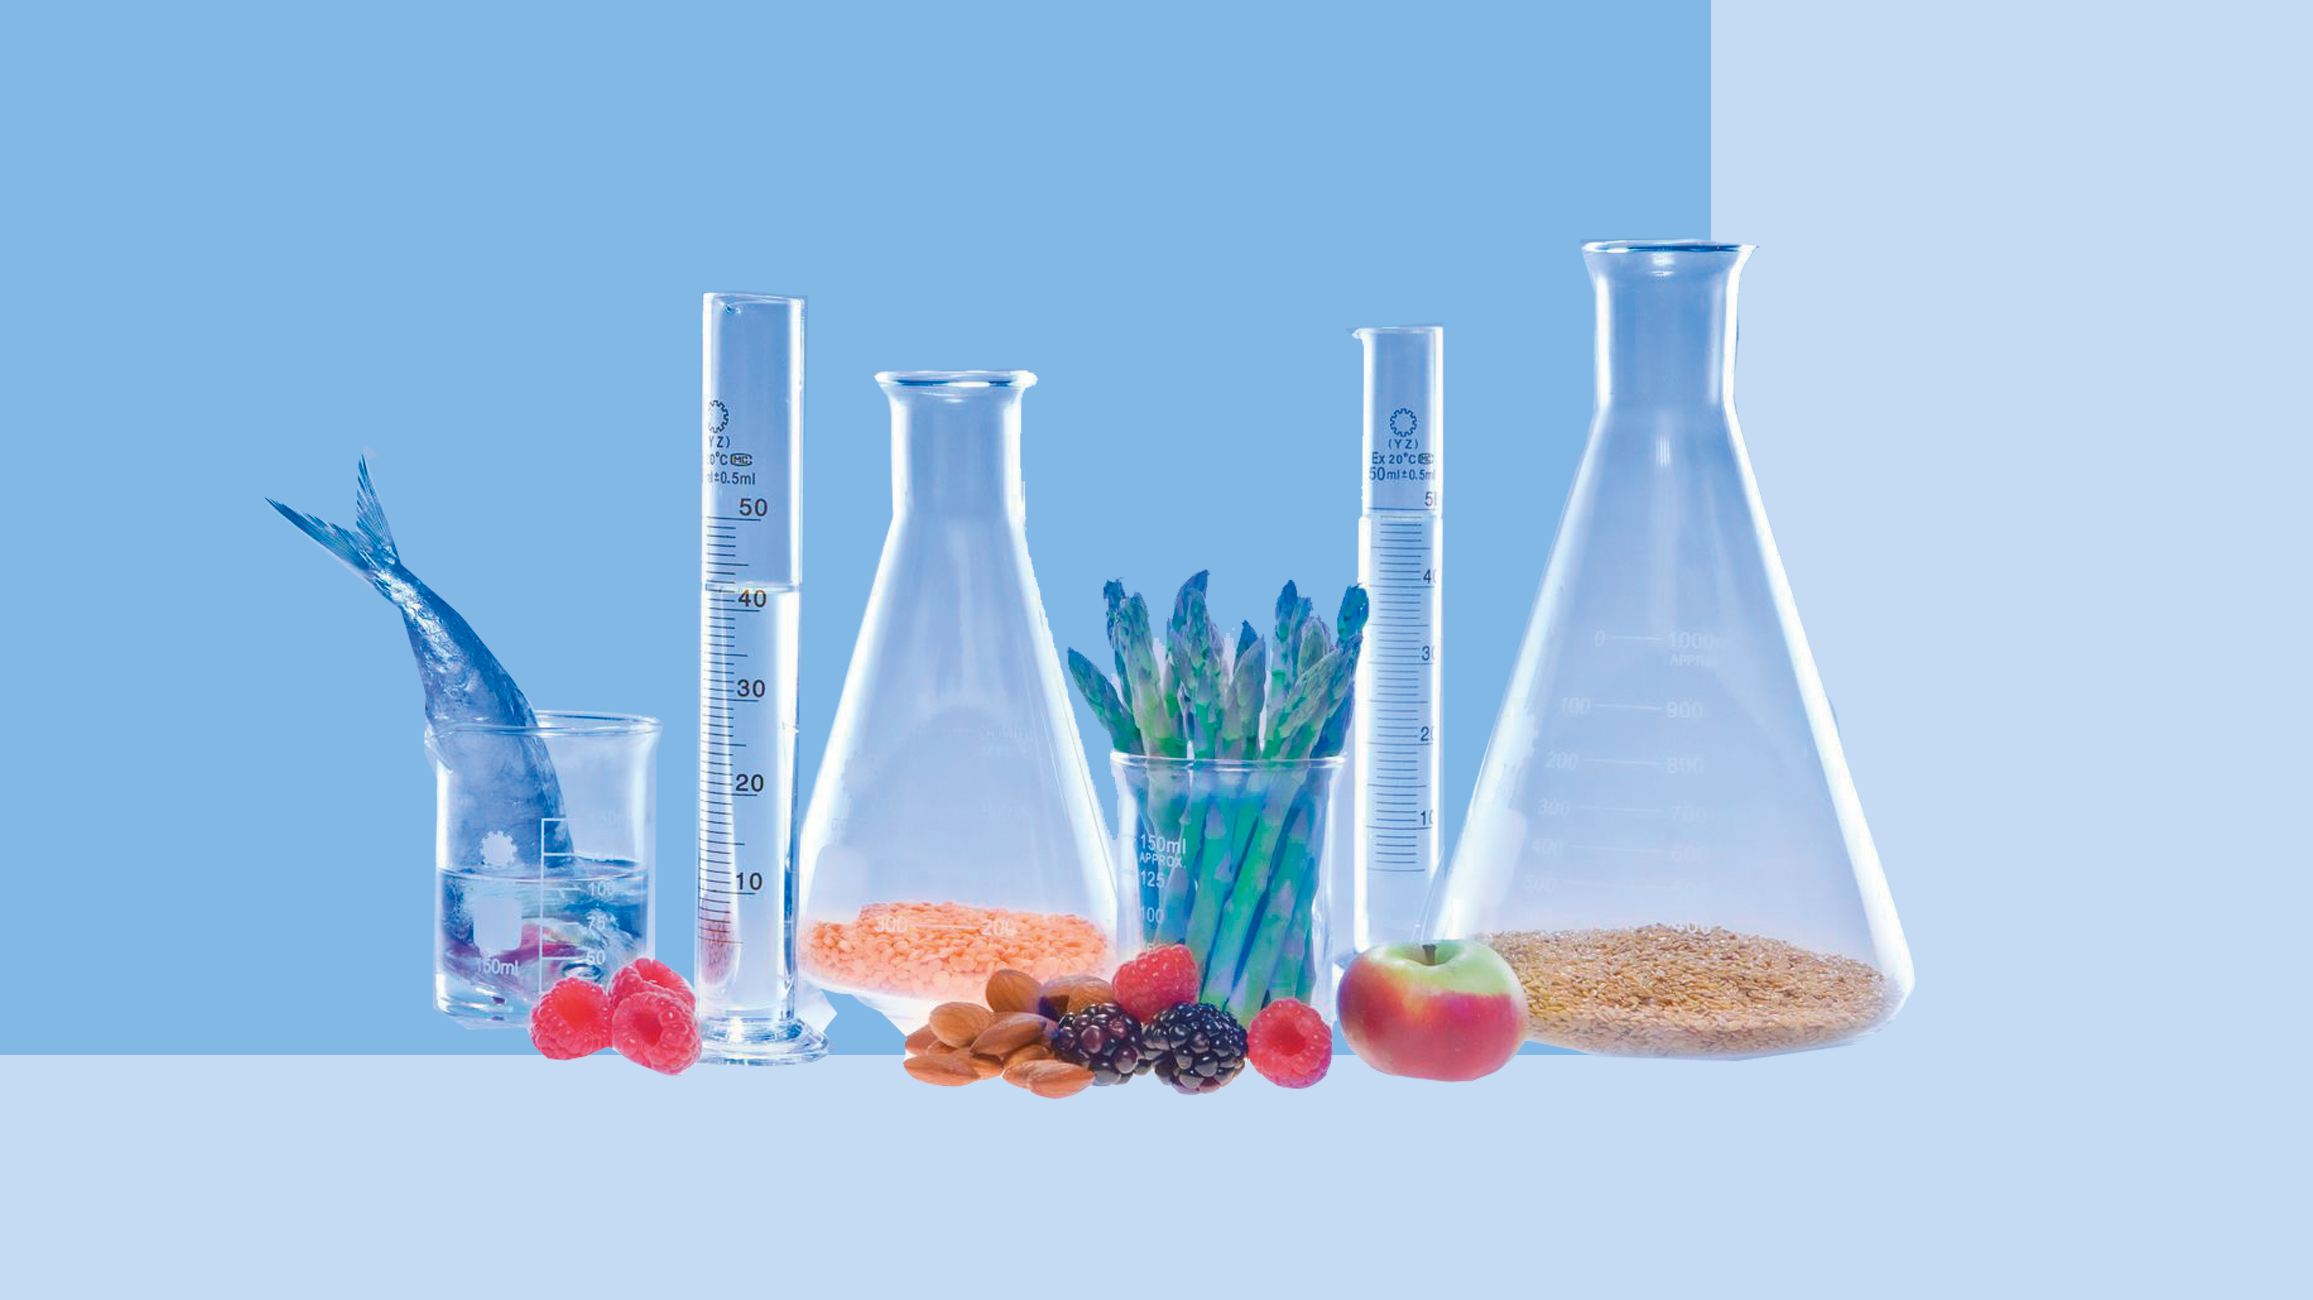 Биологические пища вода воздух. Пищевая химия. Химия и пища. Химия в пищевой промышленности. Биотехнология пищевых продуктов.